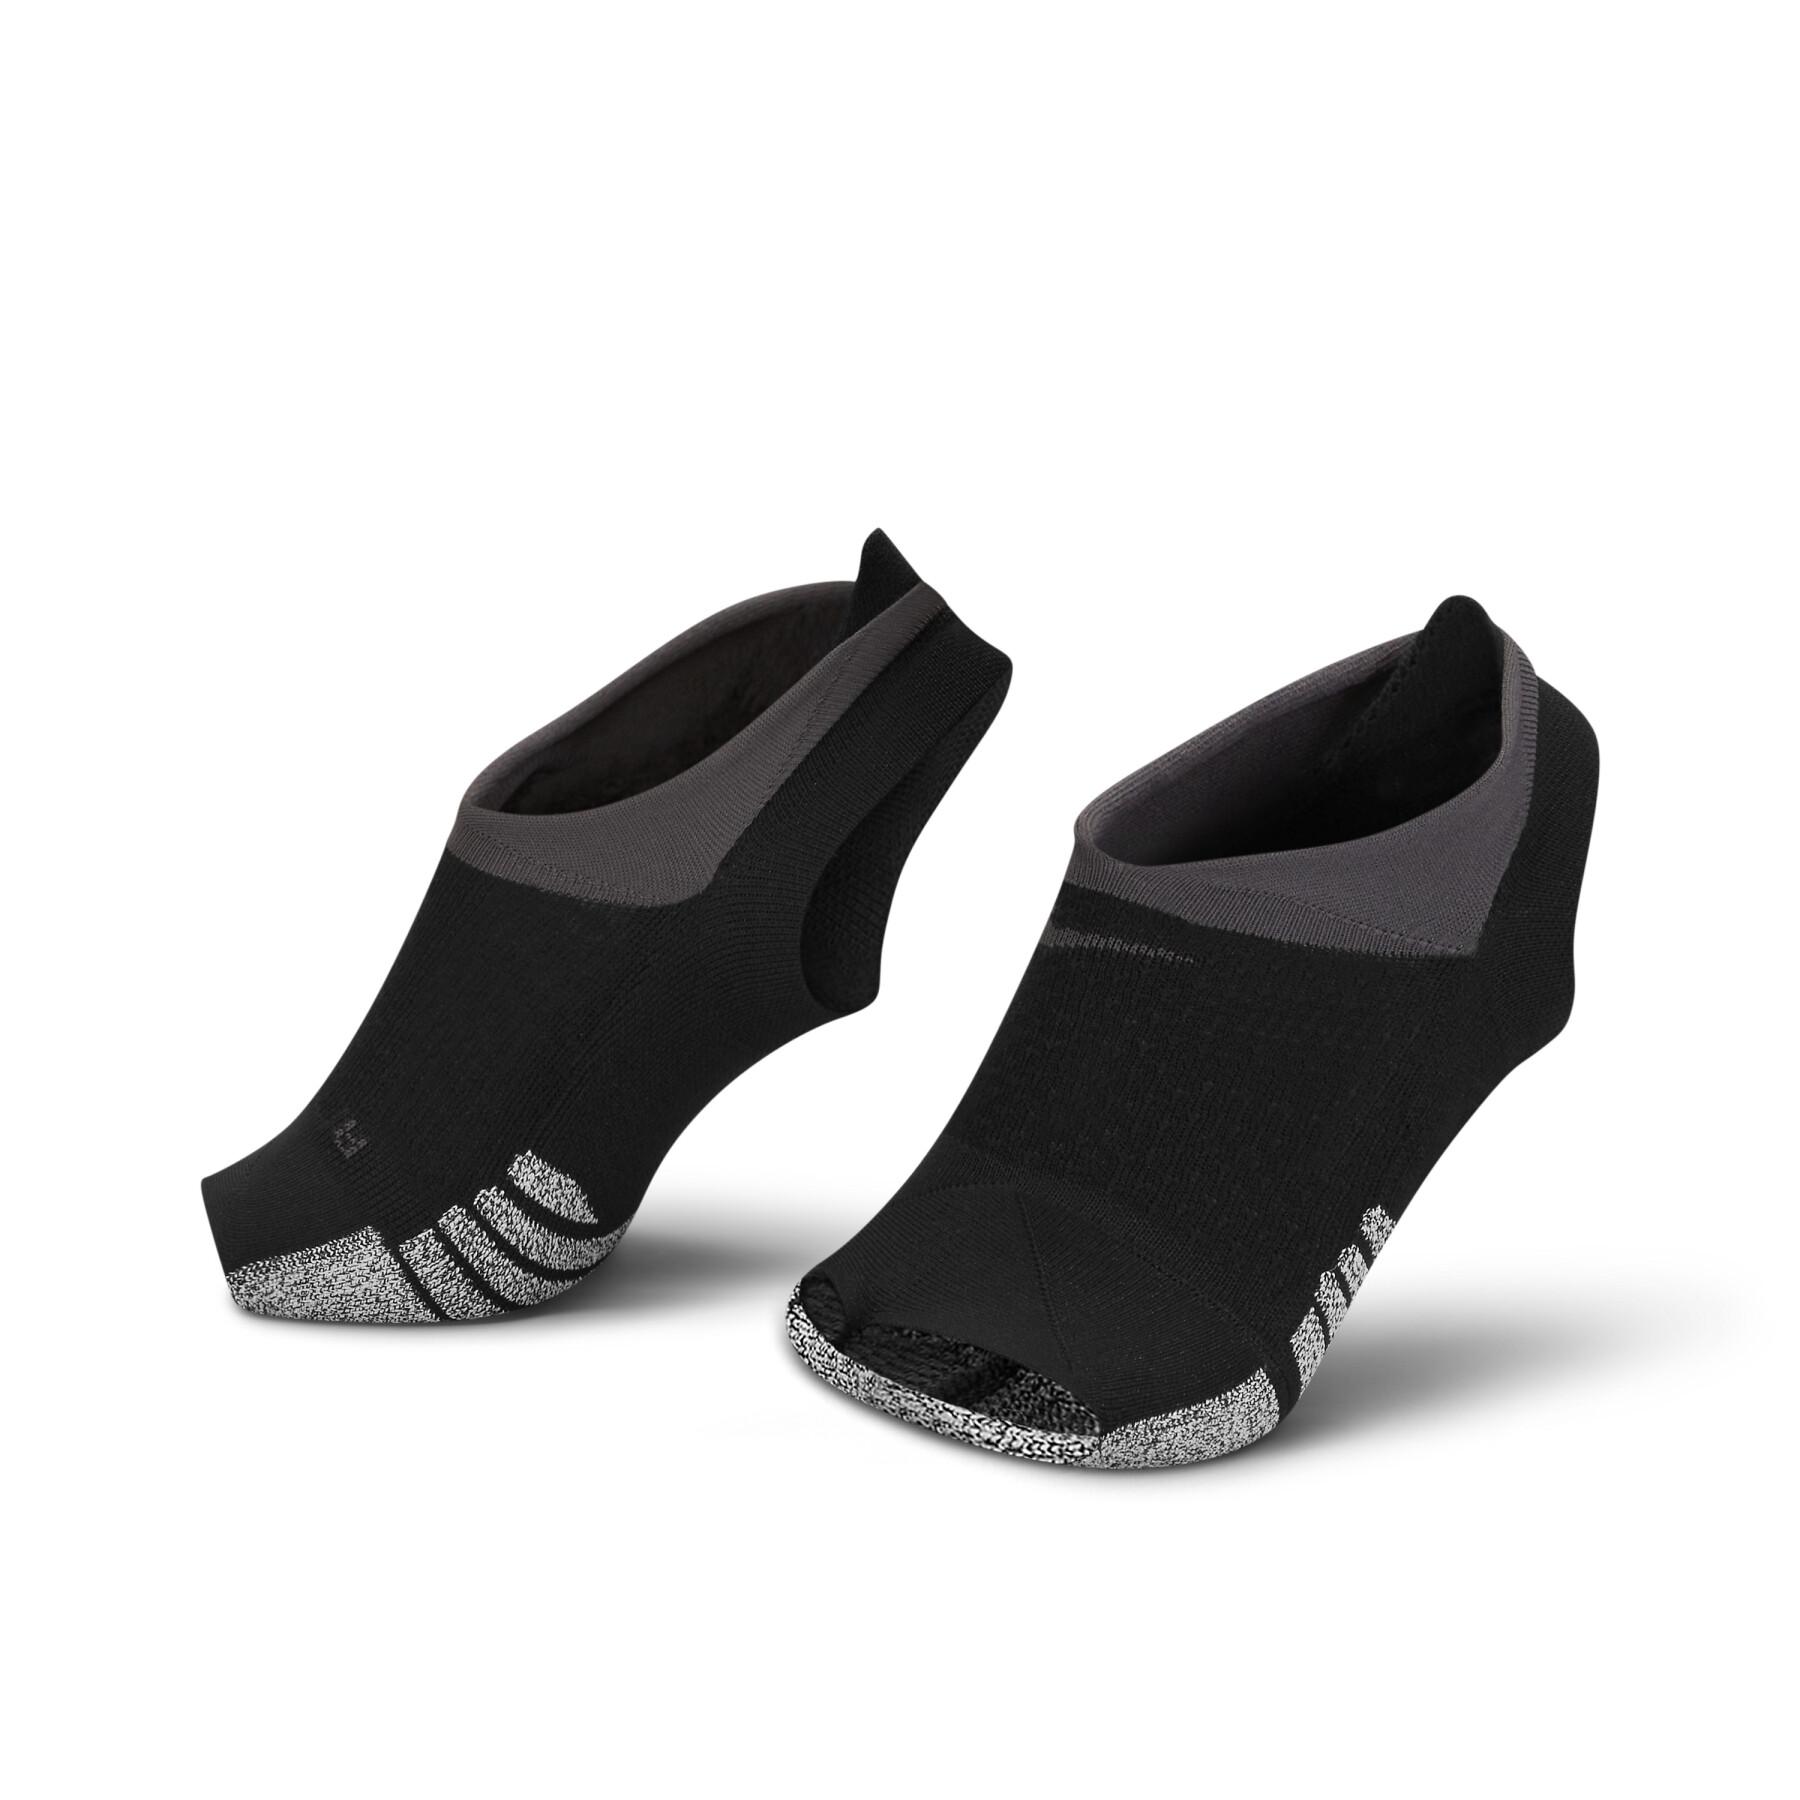 Socken für Frauen Nike Grip studio